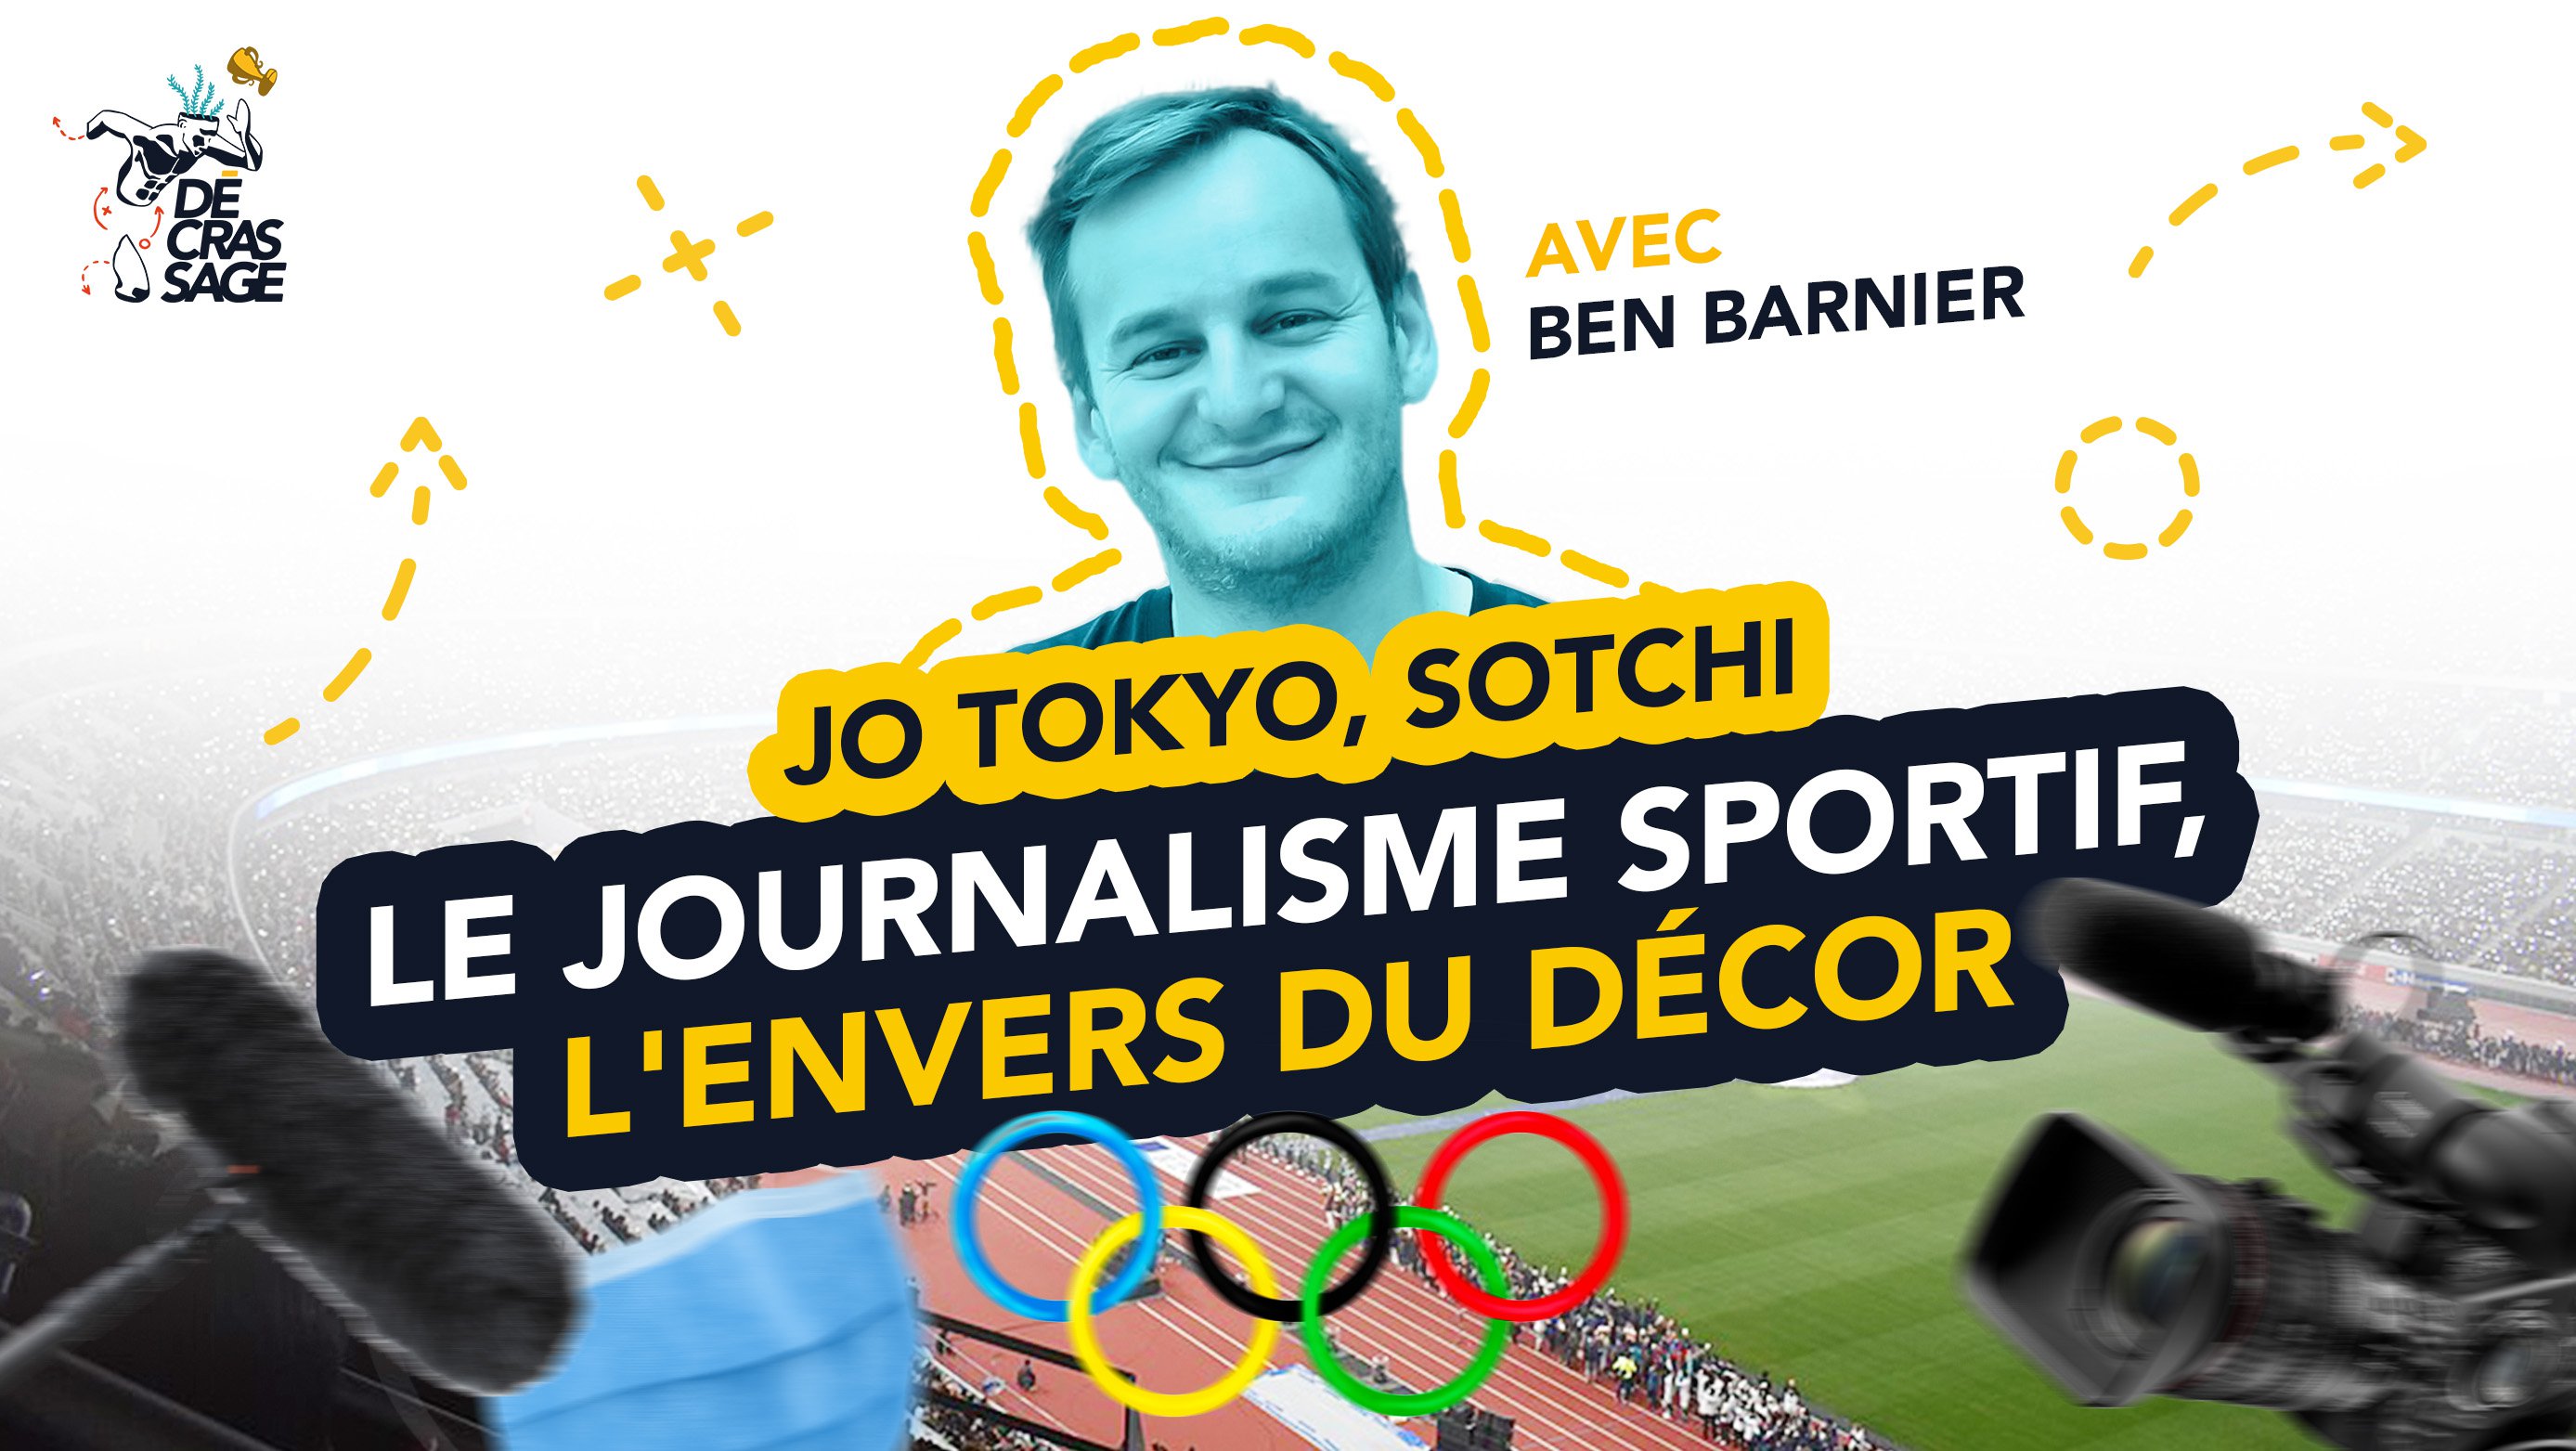 Olympische Spelen in Tokyo, Sochi: Sportjournalistiek en achter de schermen